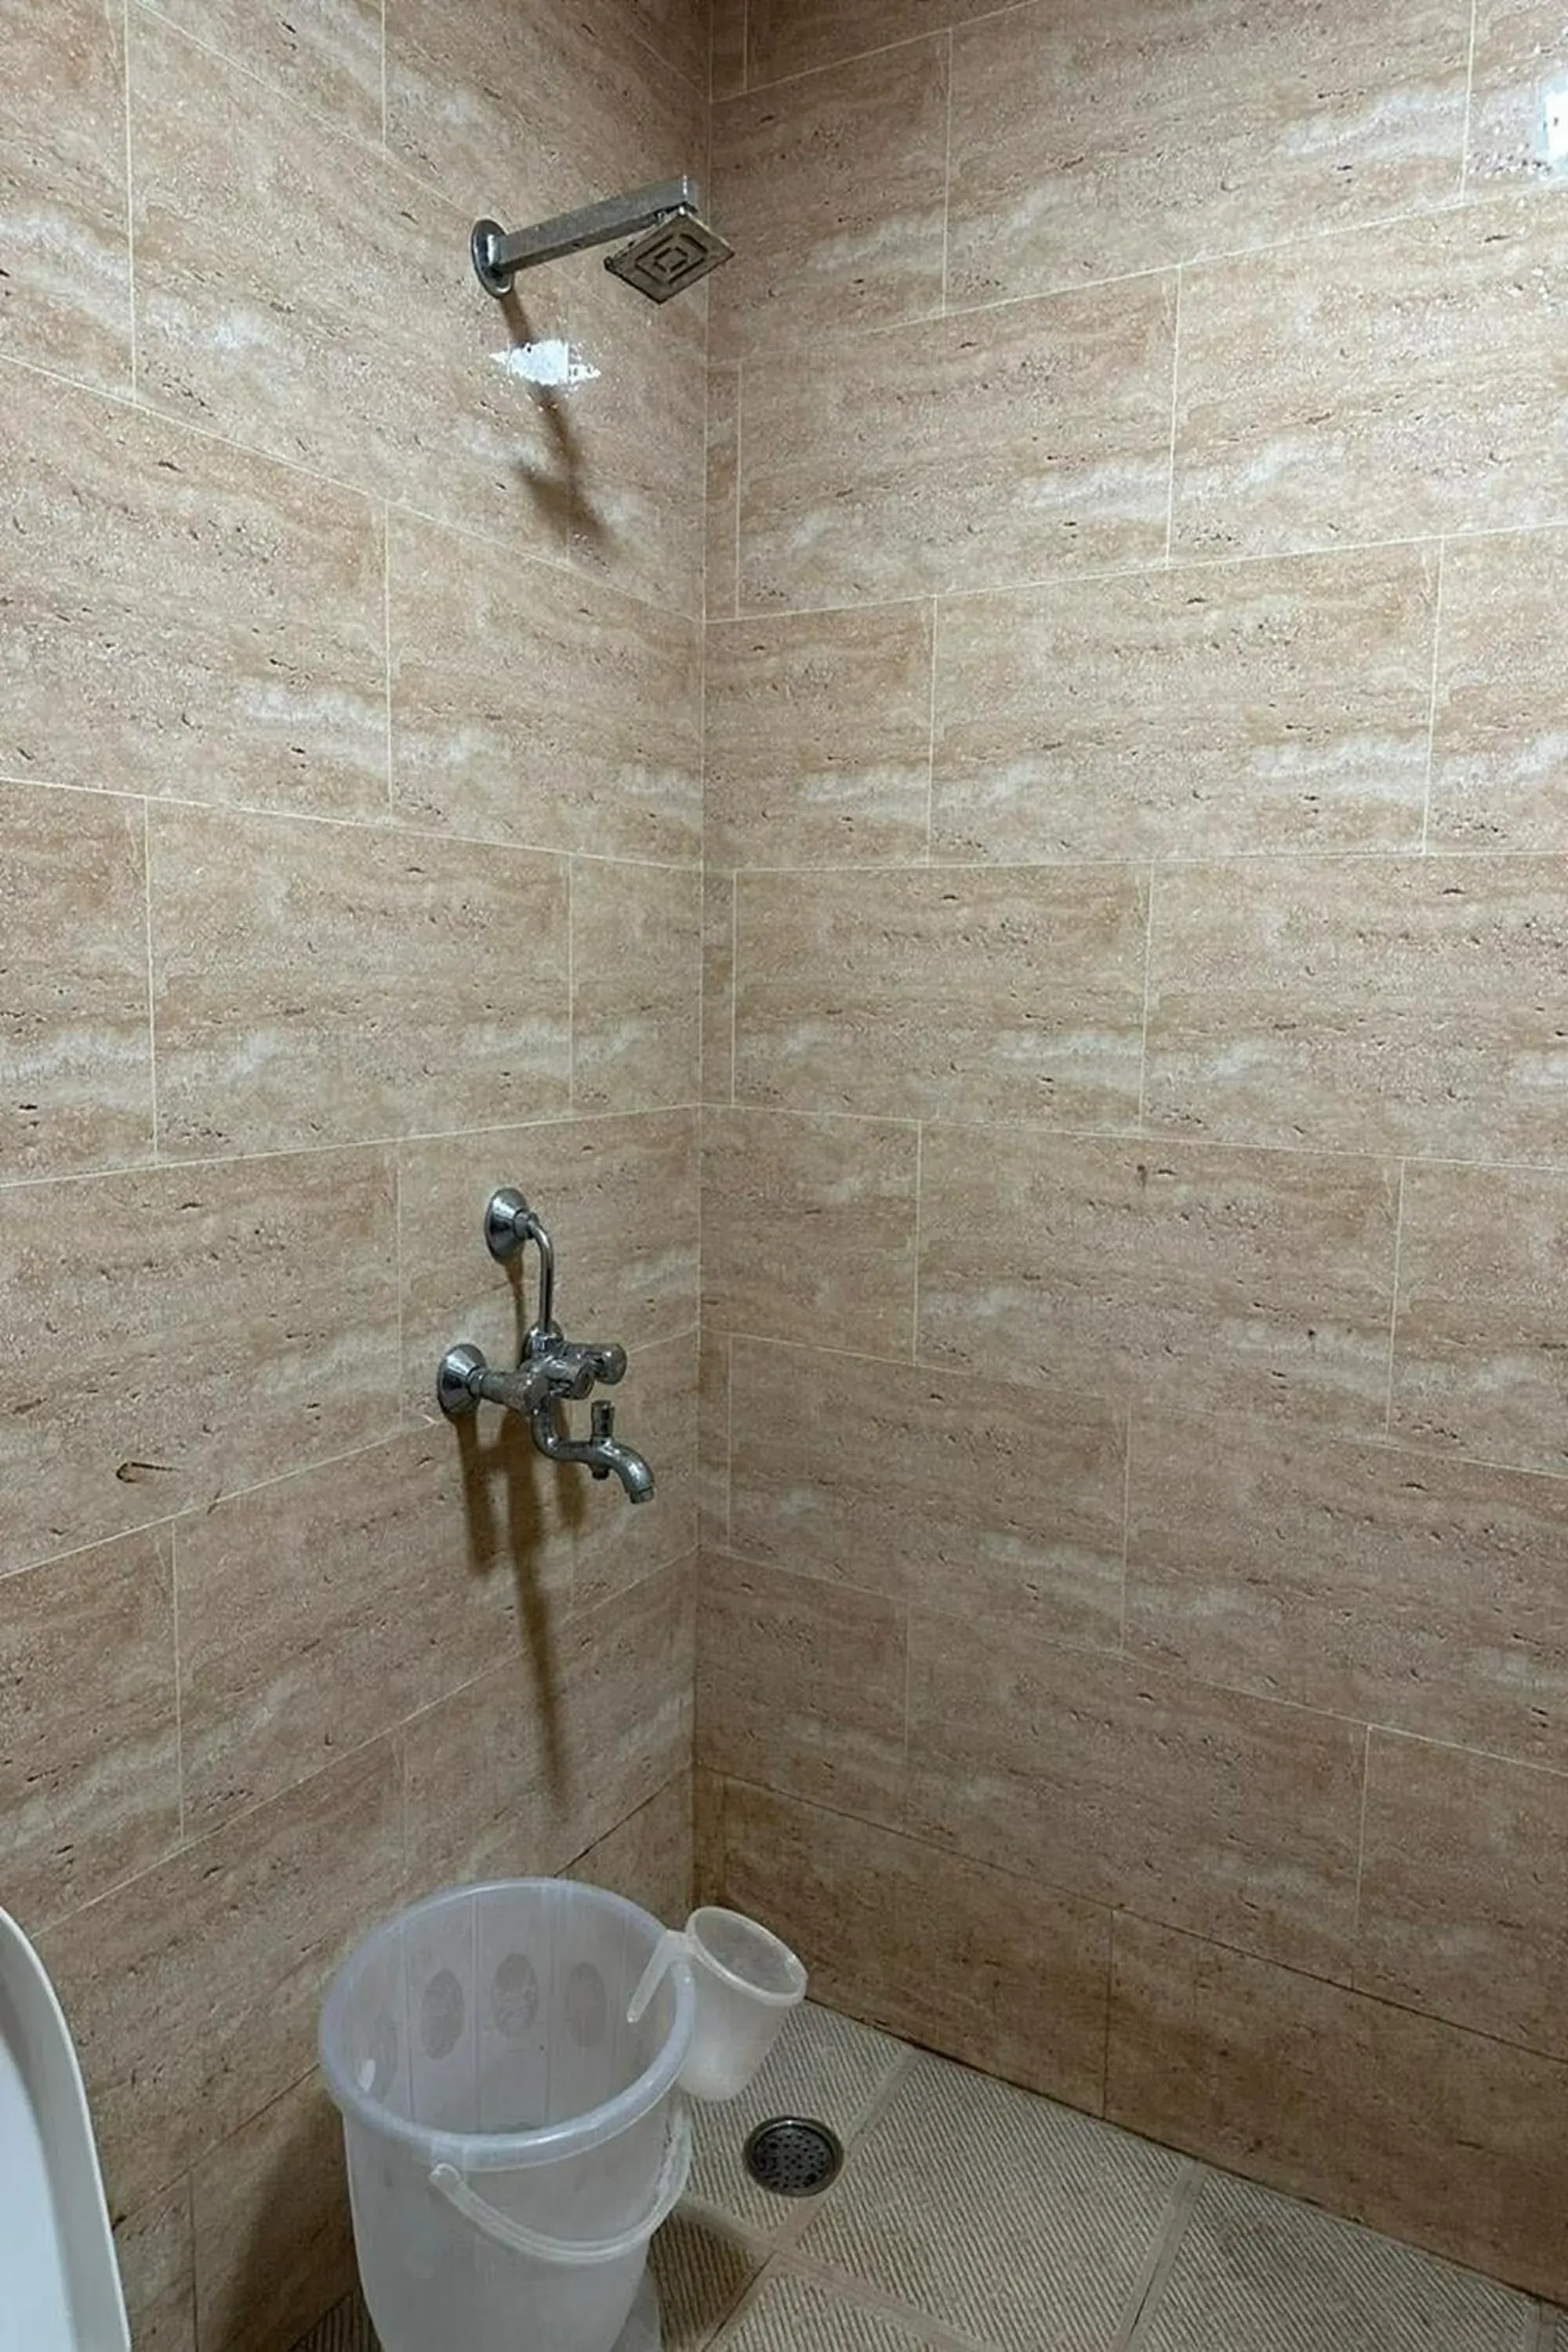 Bathroom in Hotel Amenda International